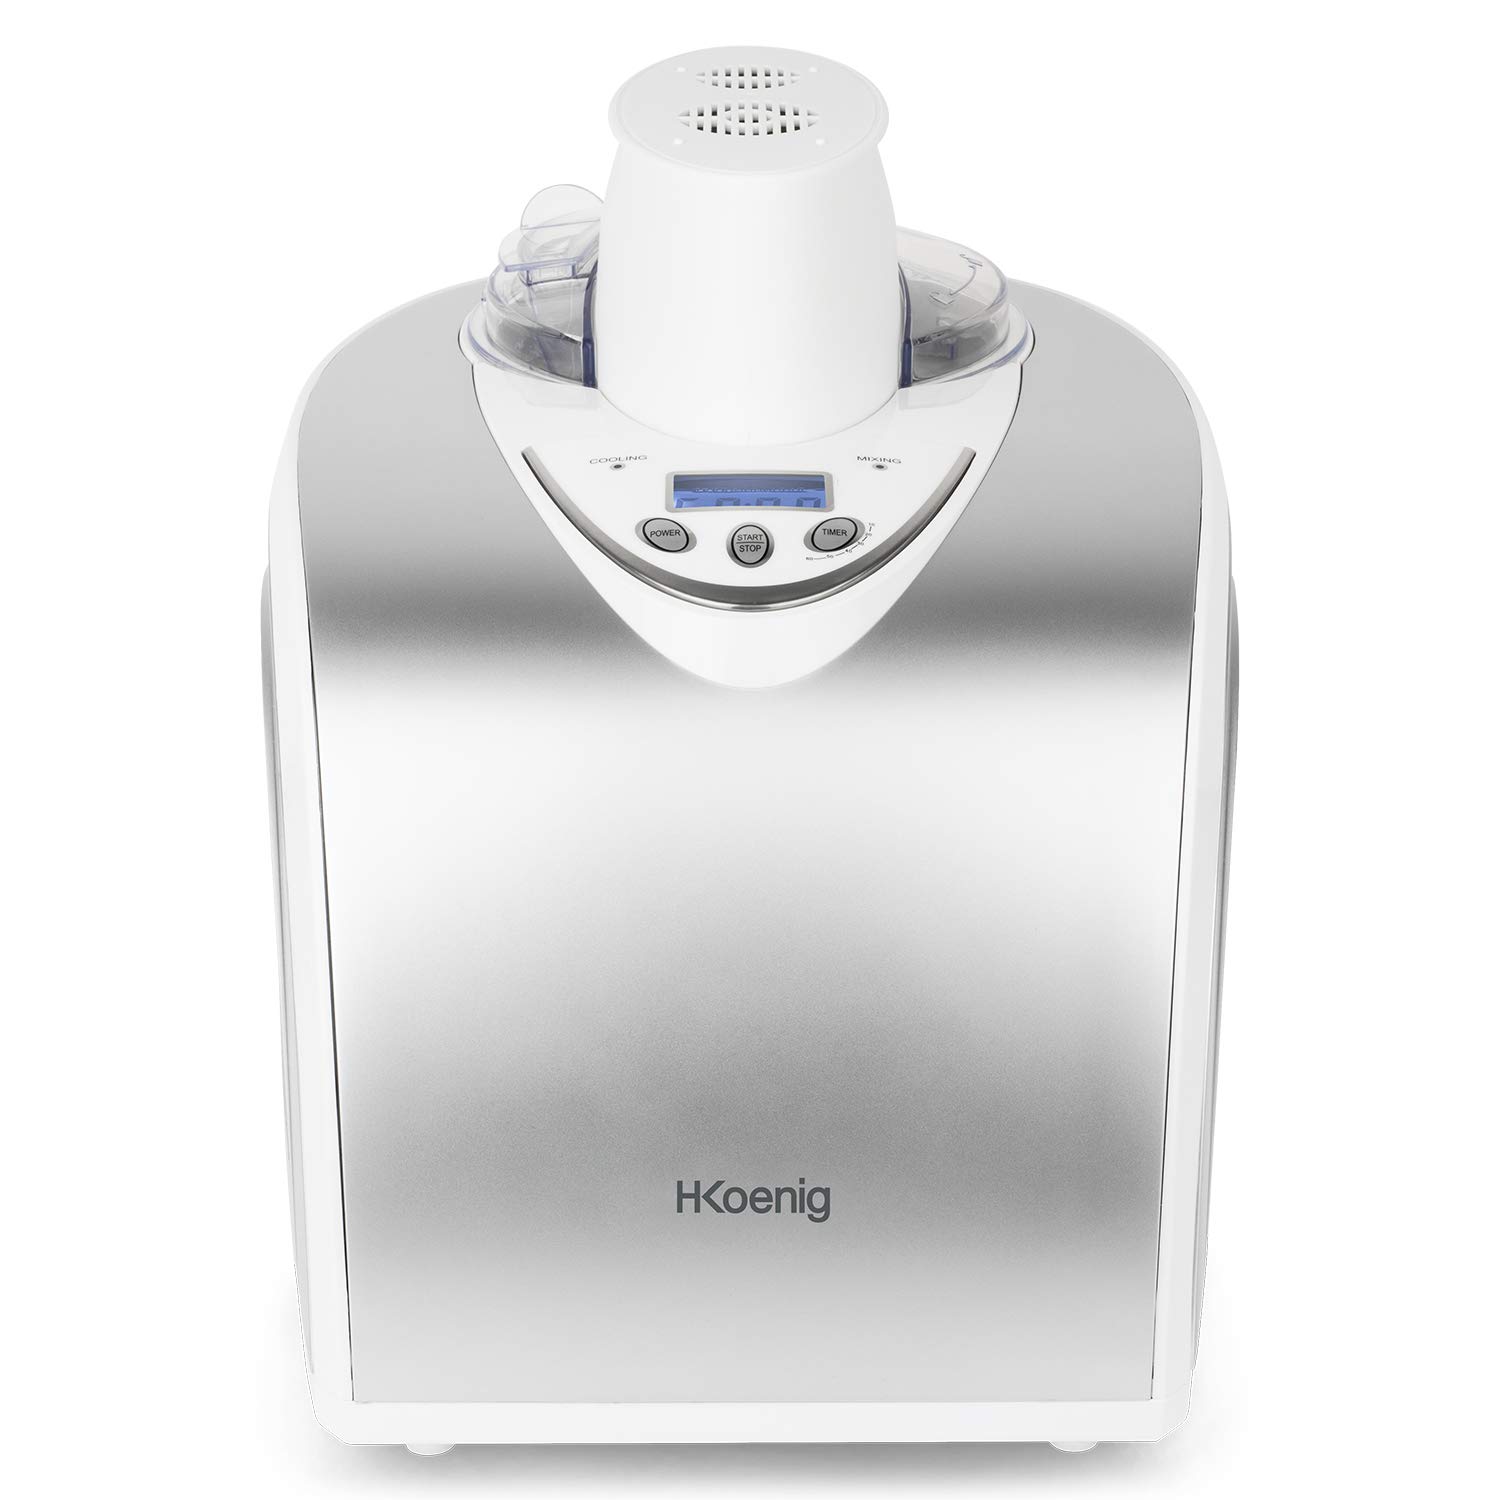 H.Koenig professionelle Eismaschine HF180 - Elektrisch - 1 L - 135 W - Kühlfunktion - Schnelle Zubereitung - Eis, Frozen Joghurt und Sorbet